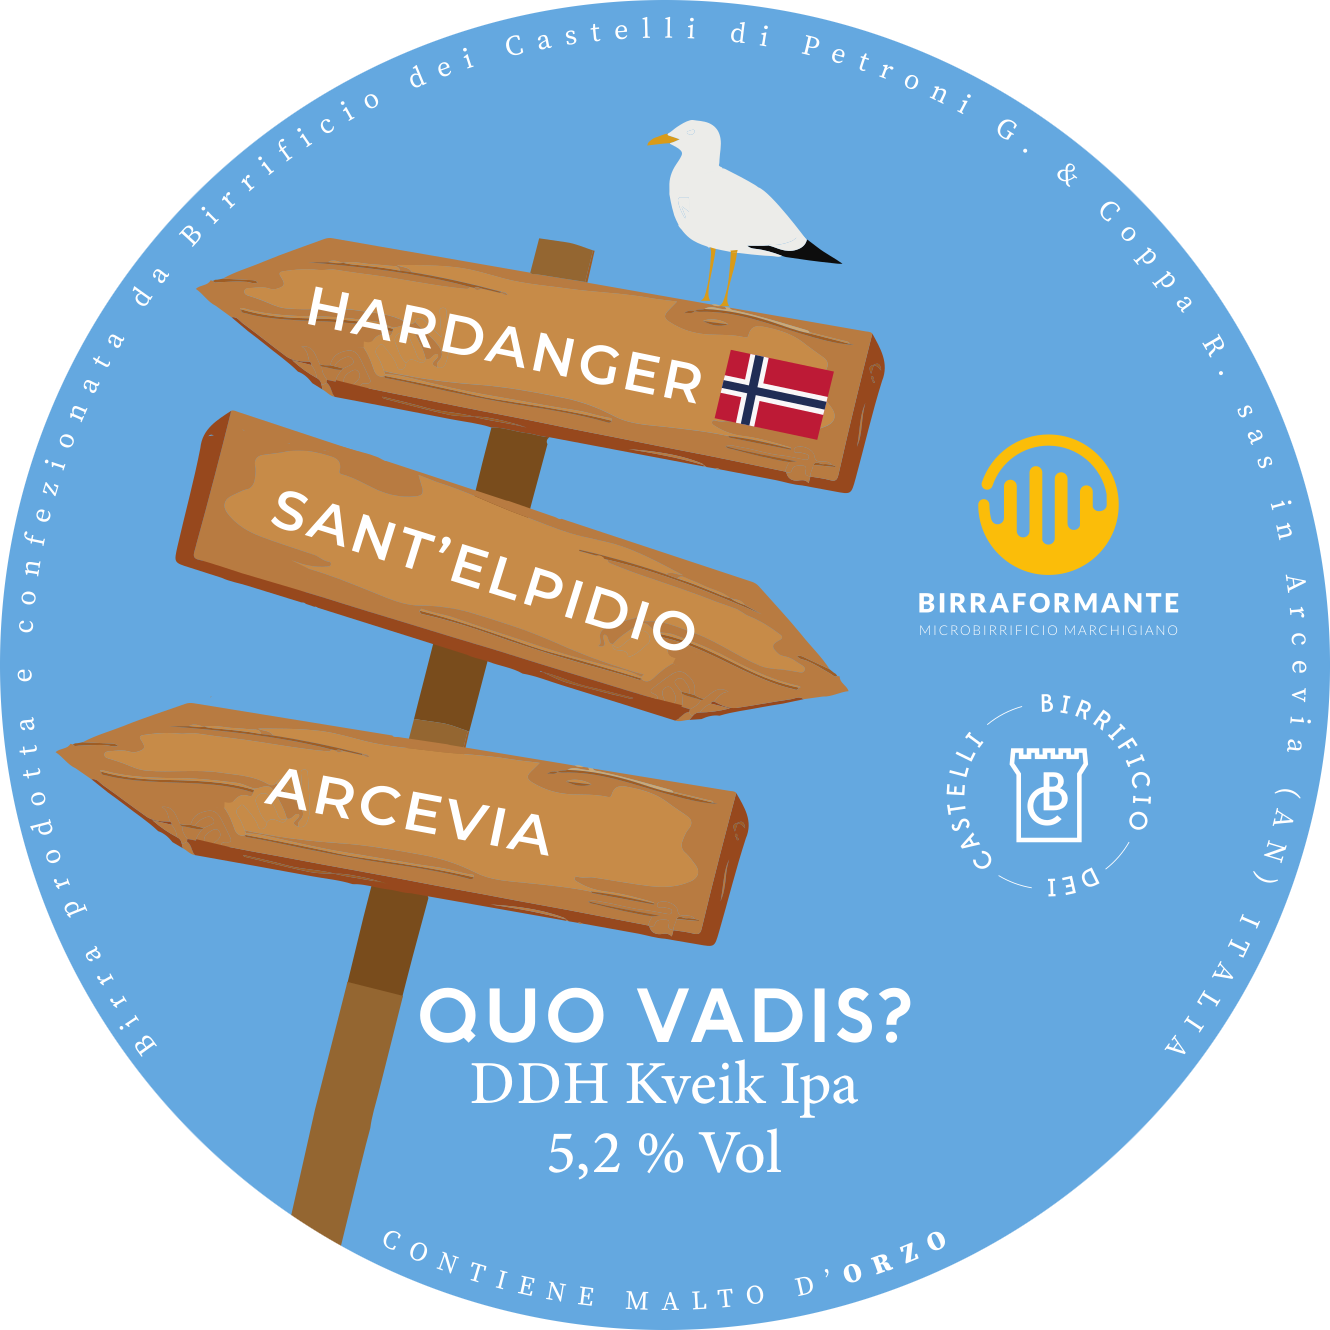 quo vadis è una birra artigianale, molto luppolata e profumata. acquista online birra o in arcevia nelle marche